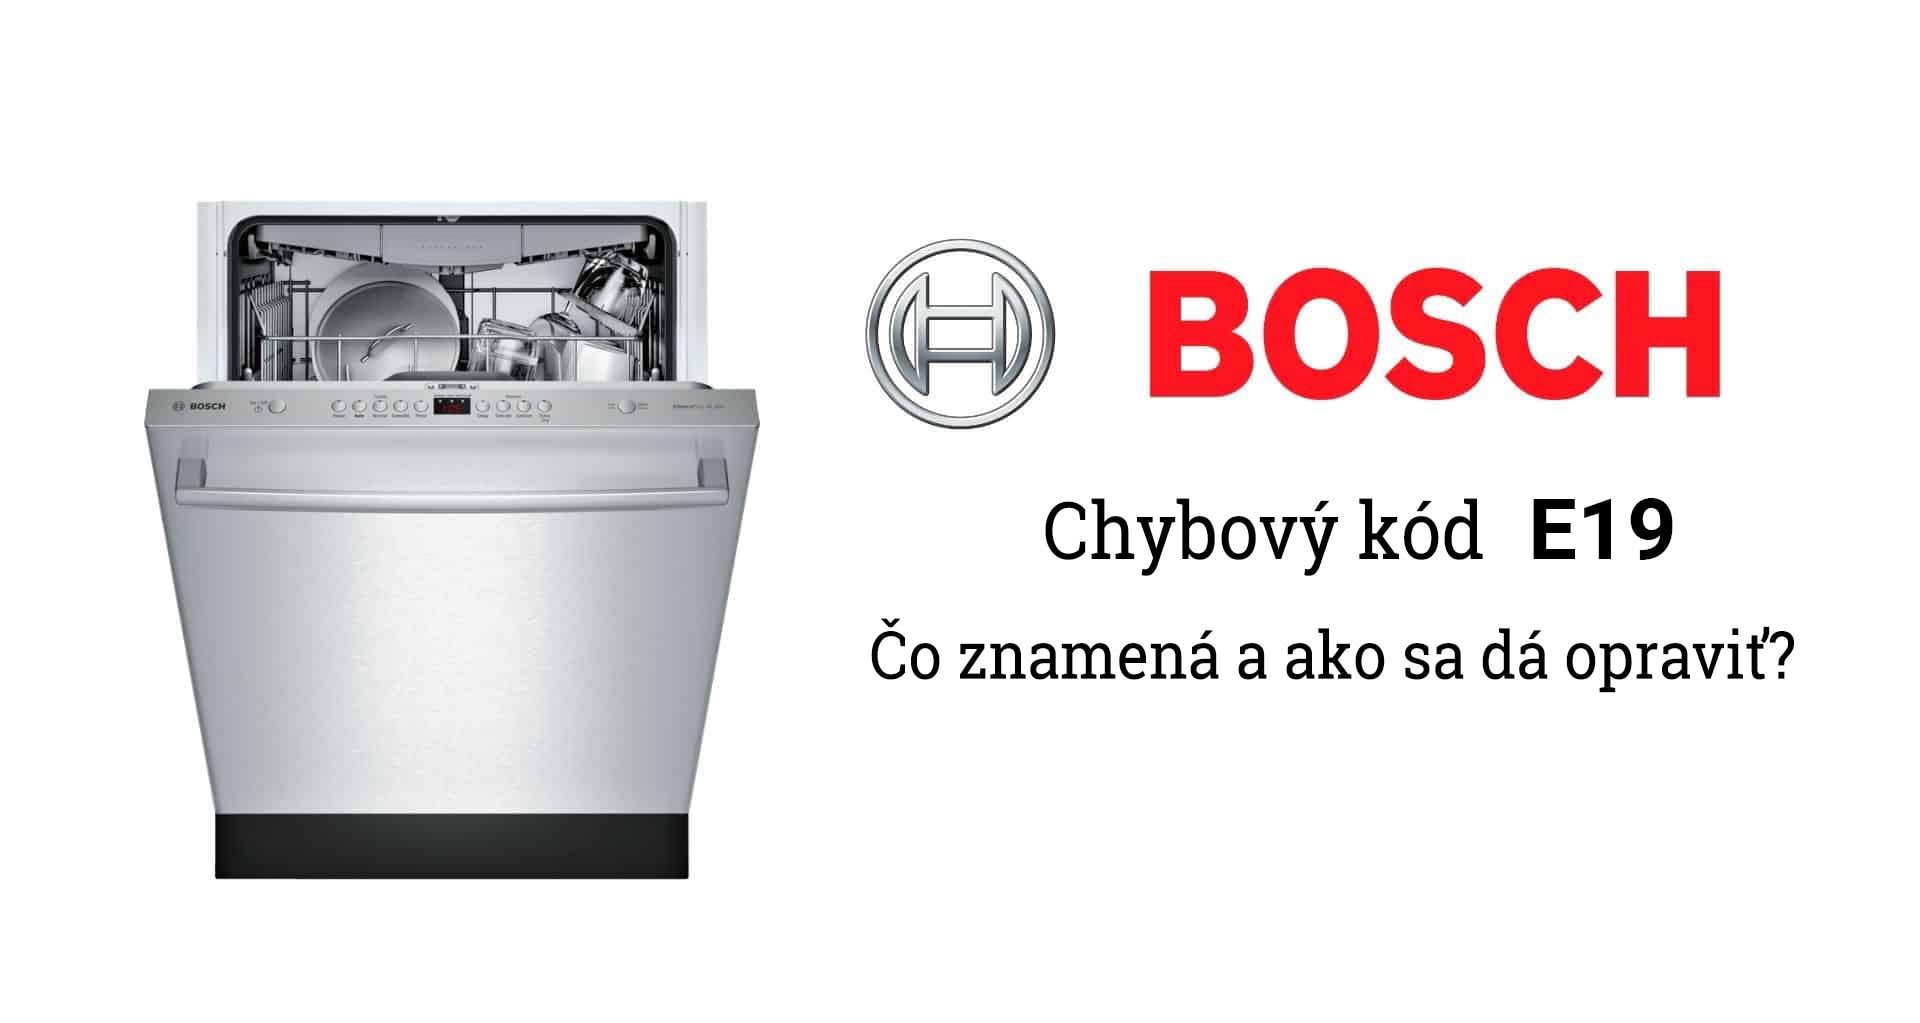 Poruchy umývačky Bosch - chybový kód E19